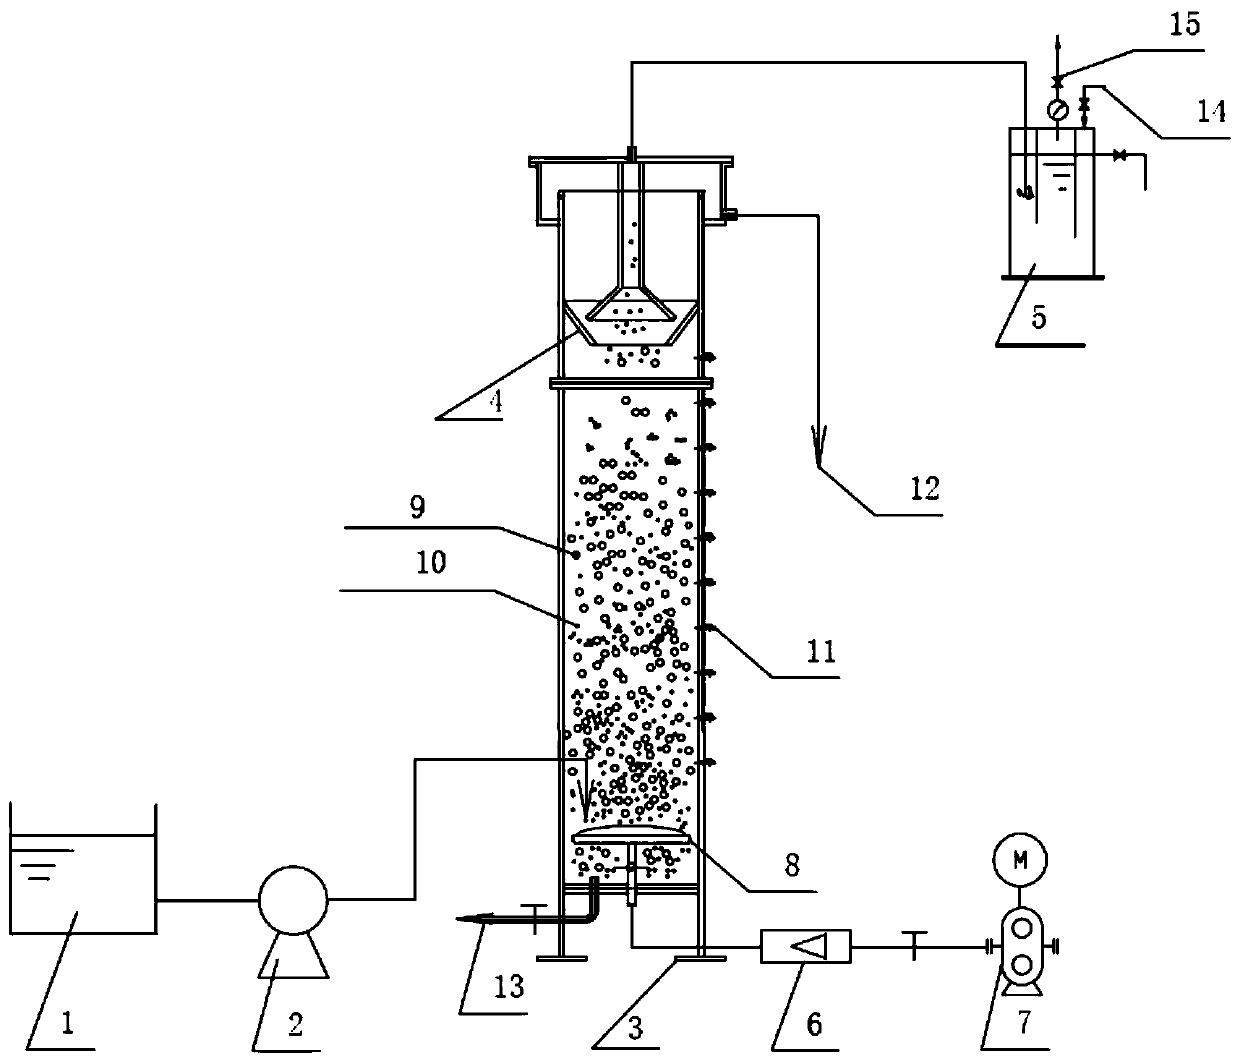 Continuous flow rising type aerobic granular sludge reactor